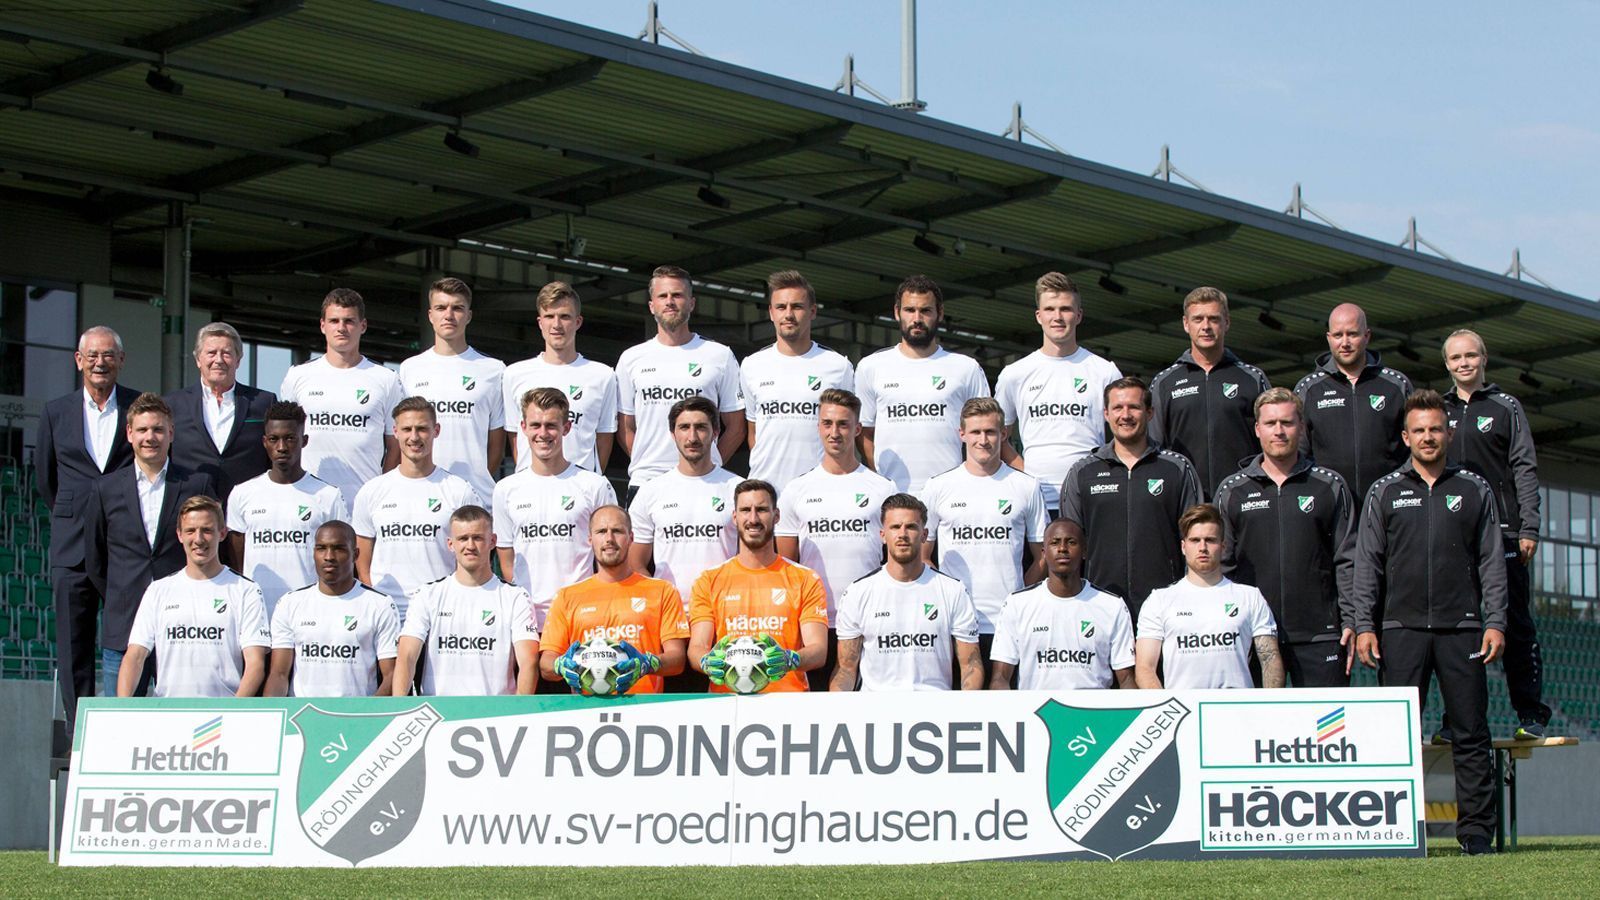 
                <strong>SV Rödinghausen Saison 2018/2019</strong><br>
                Seit dem Aufstieg 2014 spielt Rödinghausen in Deutschlands vierthöchster Spielklasse. In der aktuellen Saison liegen die Ostwestfalen nach 15. Spieltagen auf Platz fünf der Tabelle, allerdings mit nur einem Punkt Rückstand auf den Tabellenzweiten Rot-Weiß Oberhausen. Die Generalprobe für den DFB-Pokal-Kracher gegen den FC Bayern München glückte ebenfalls. Mit 2:0 setzte sich Rödinghausen gegen Ligakonkurrent Kaan-Marienborn durch.
              